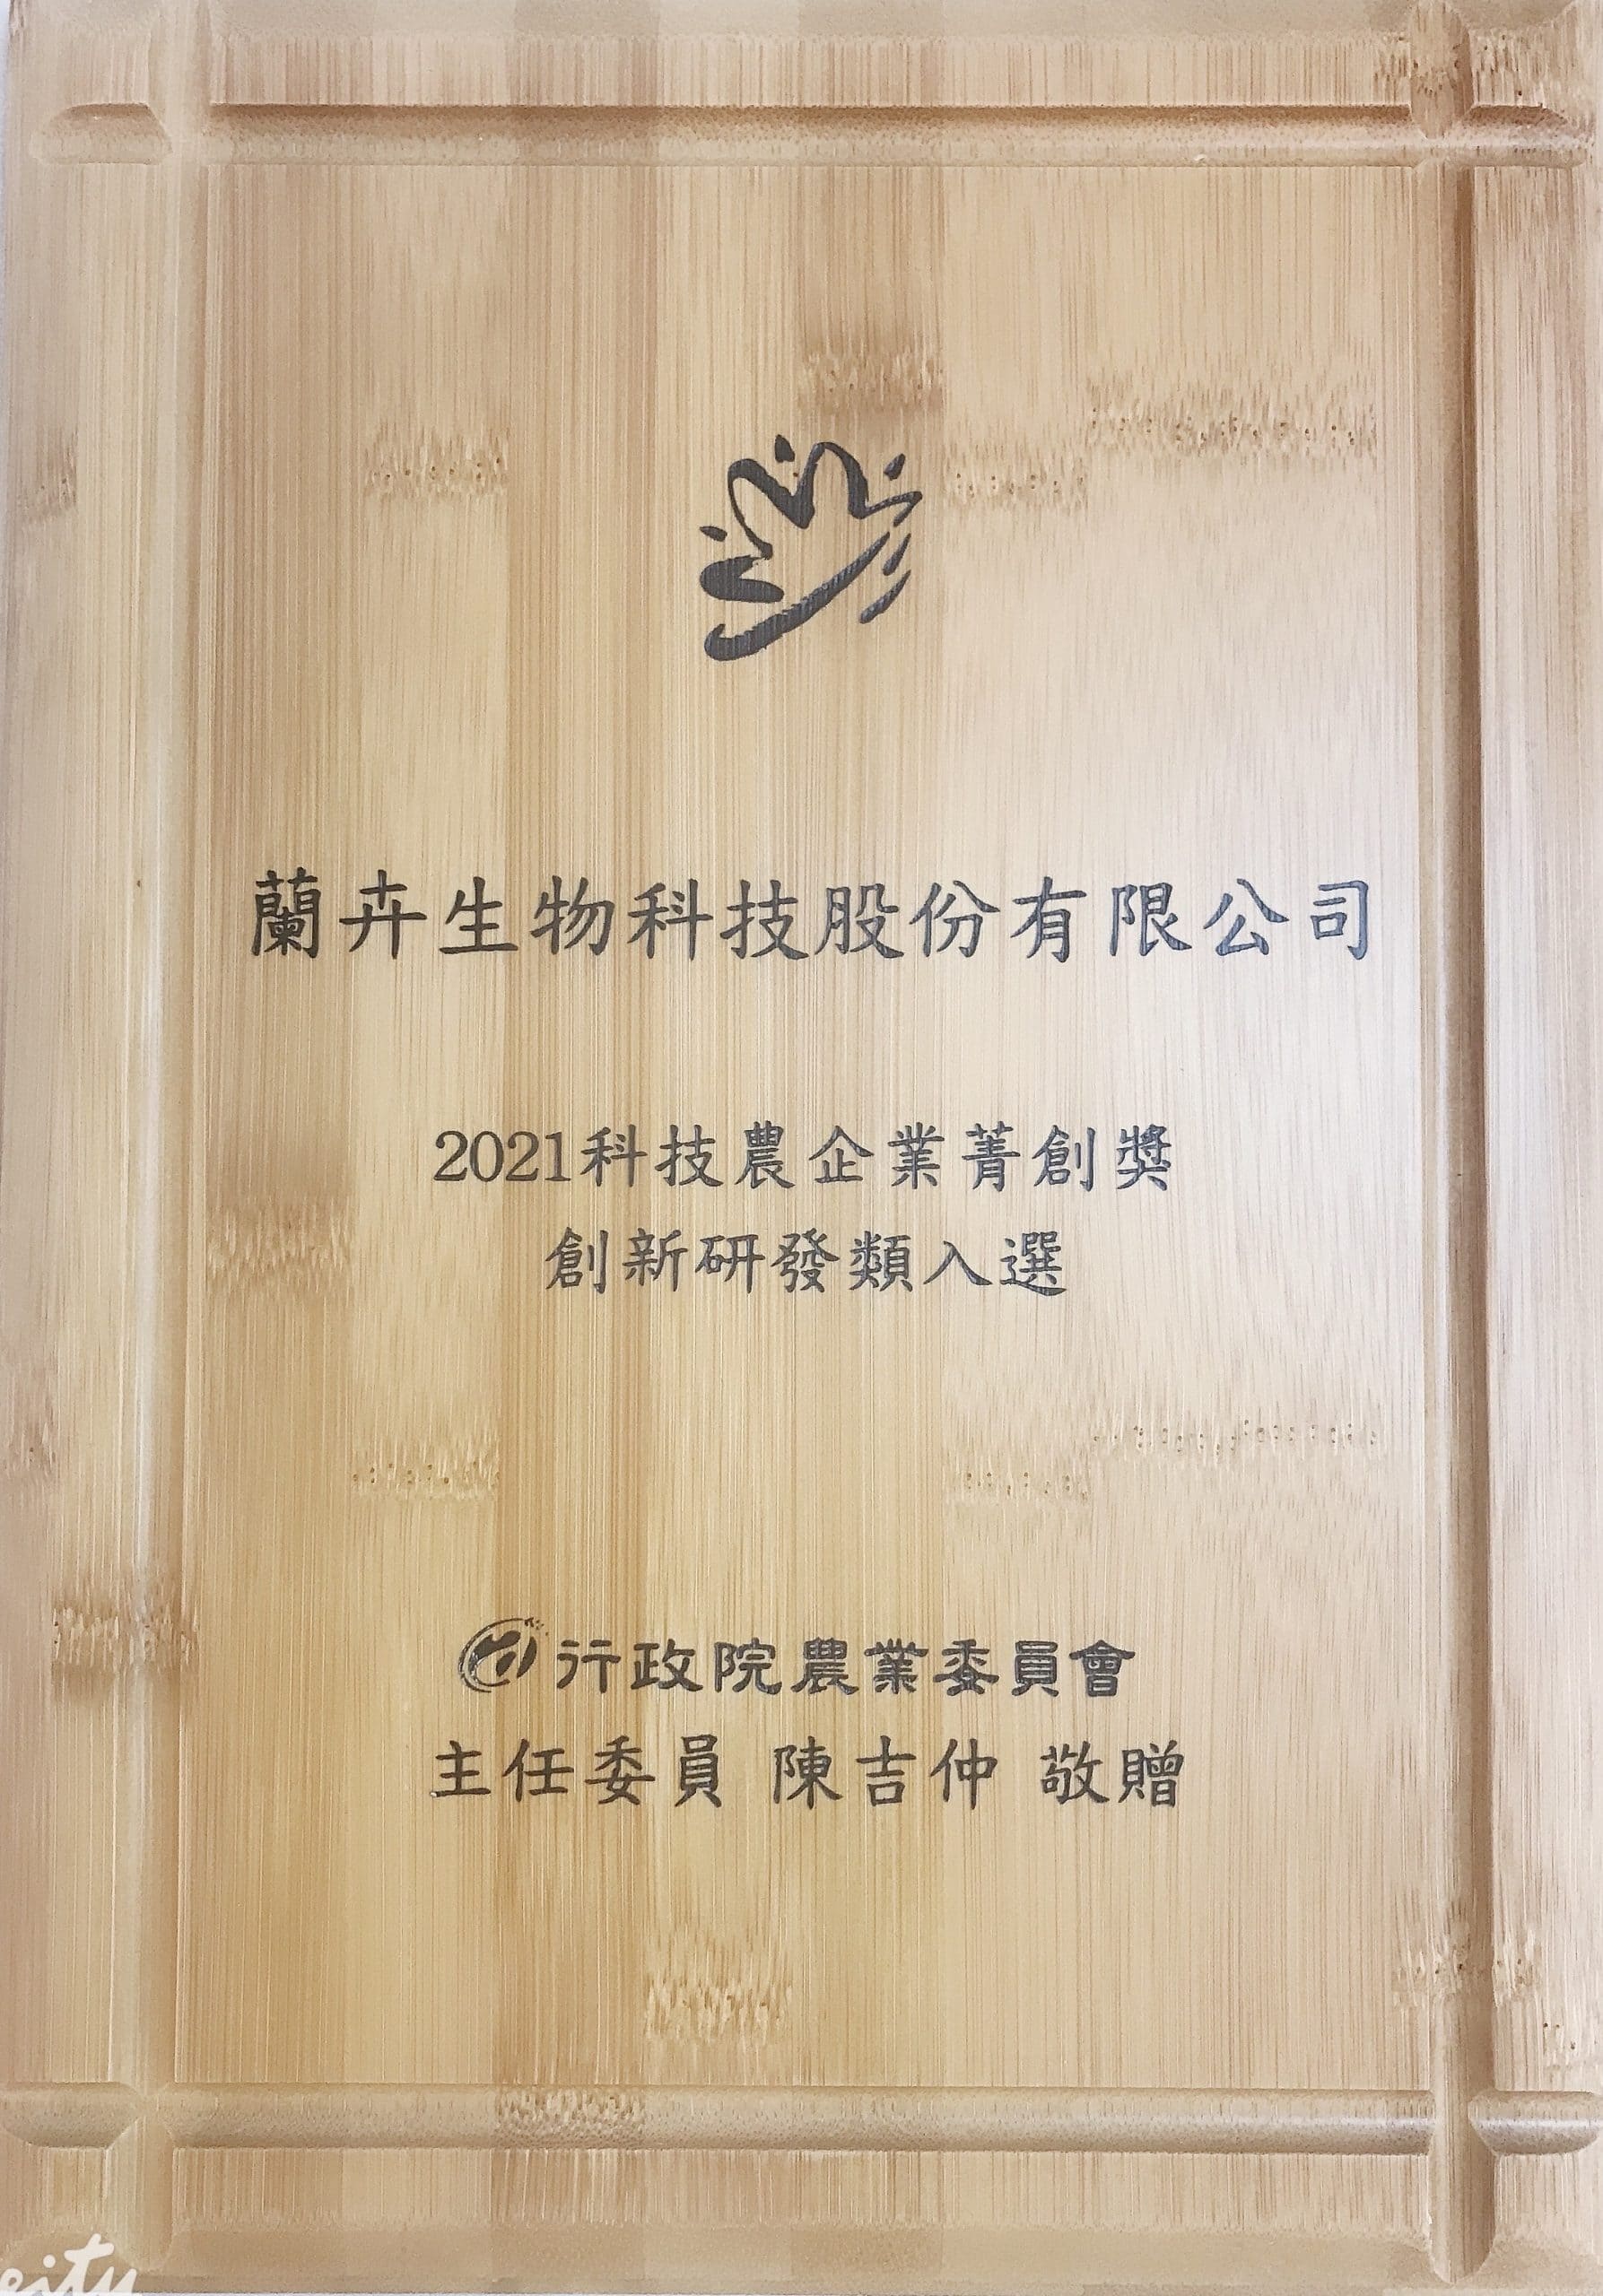 蘭卉生技榮獲2021年創新研發類 -「科技農企業菁創獎」 2022-03-16